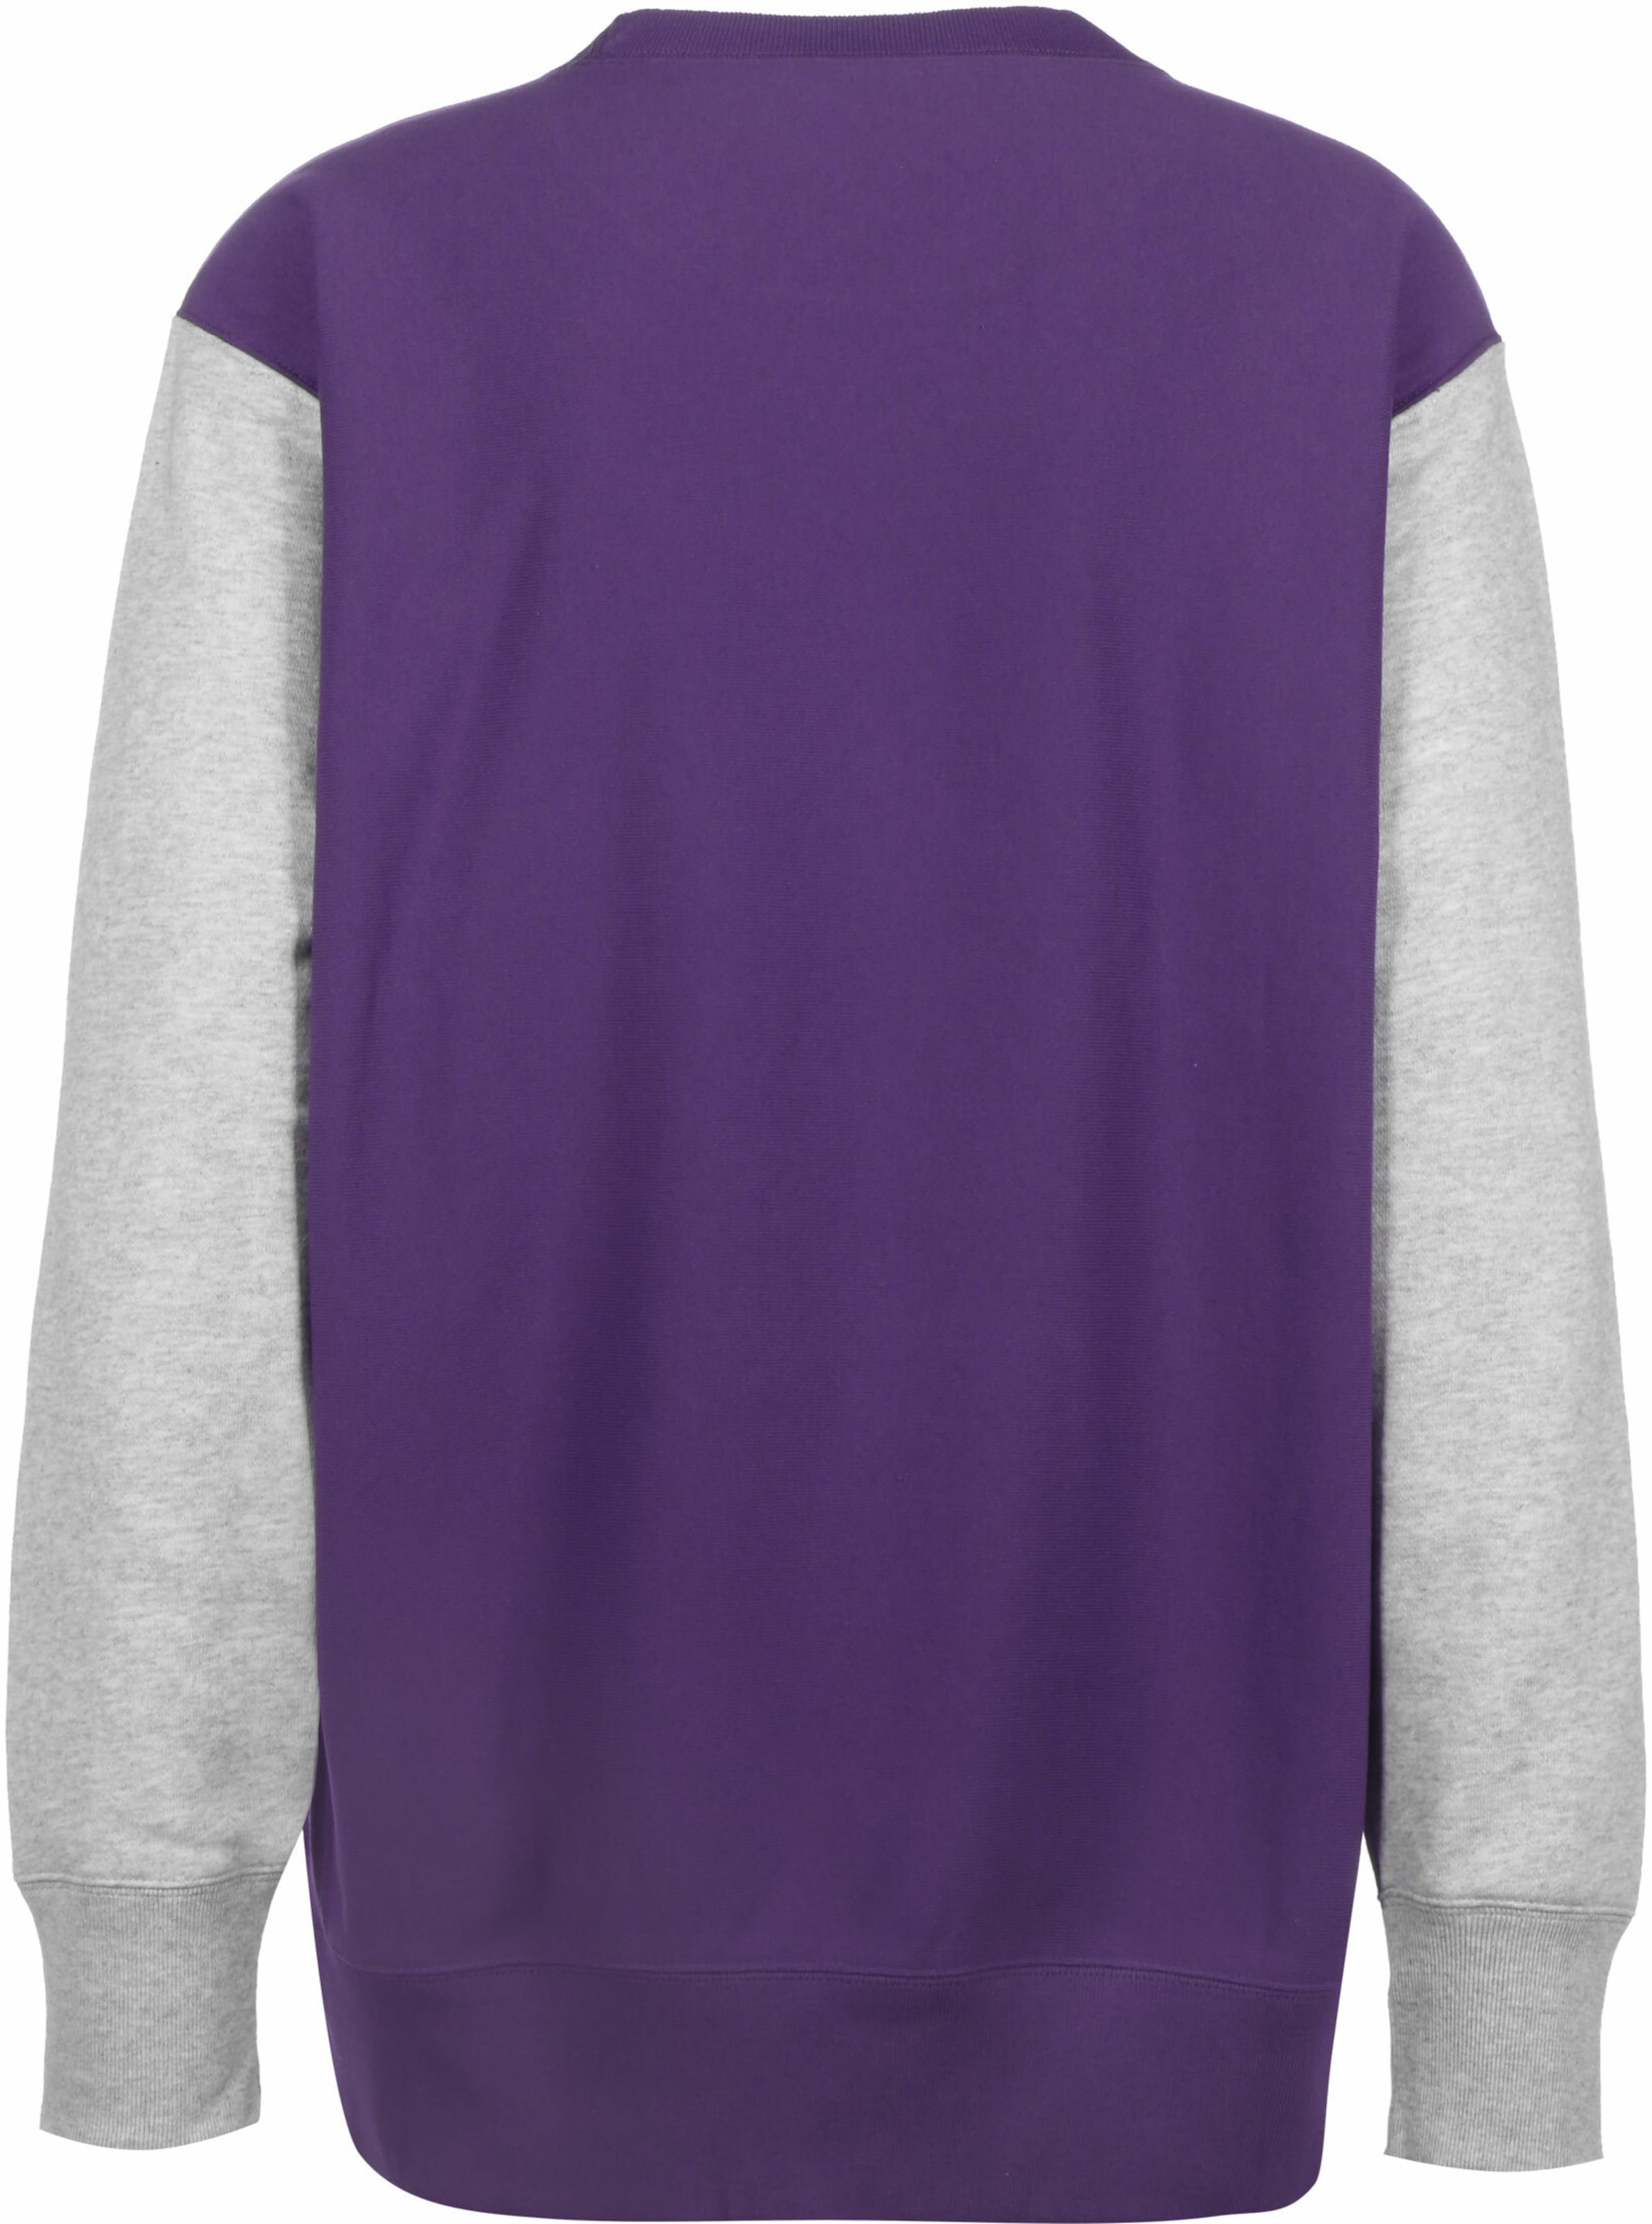 Vêtements Sweat-shirt Crewneck Champion Authentic Athletic Apparel en Violet Foncé 